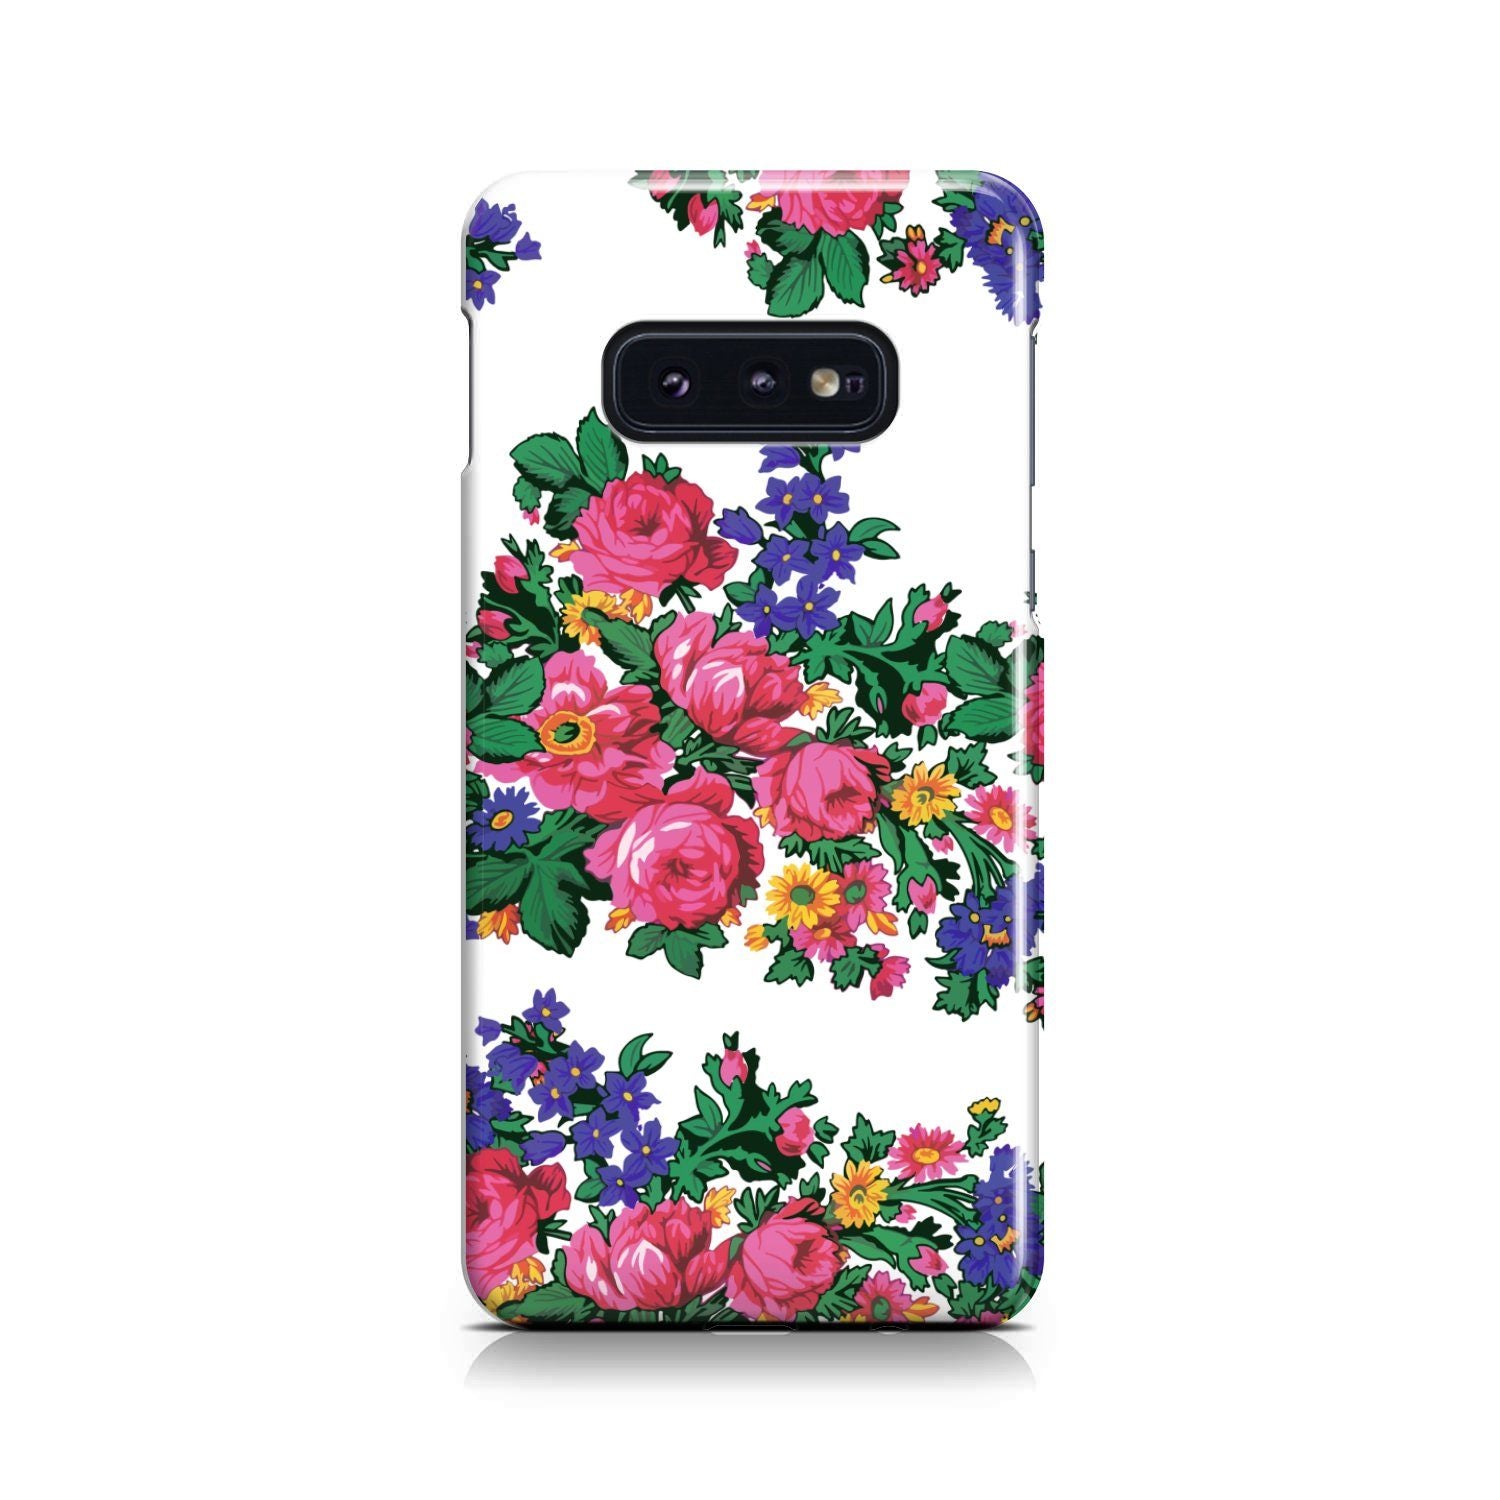 Kokum's Revenge White Phone Case Phone Case wc-fulfillment Samsung Galaxy S10e 